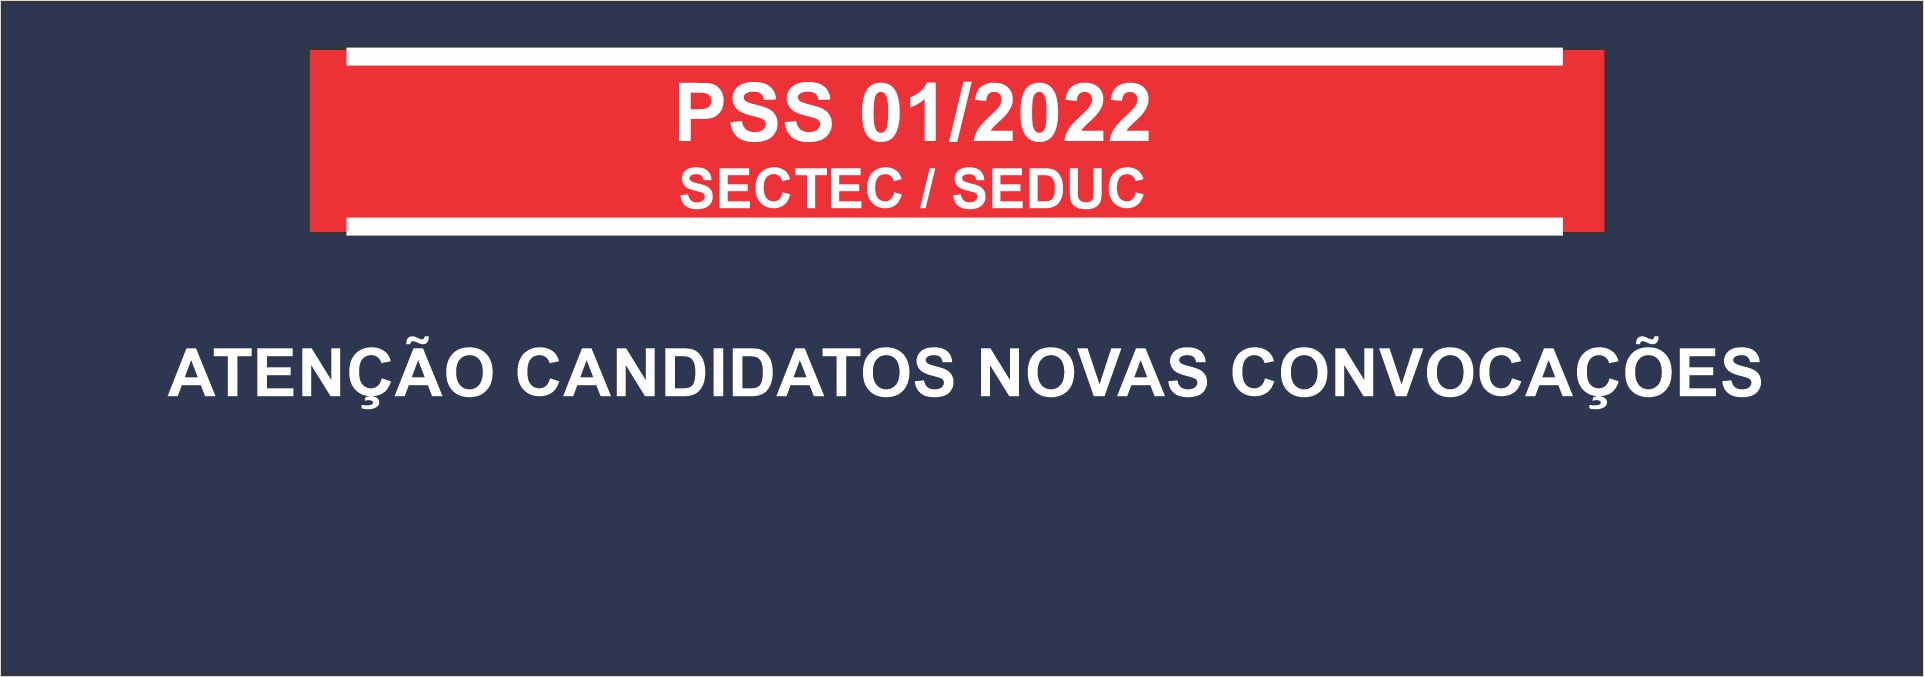 notícia: Novas convocações SECTEC/SEDUC